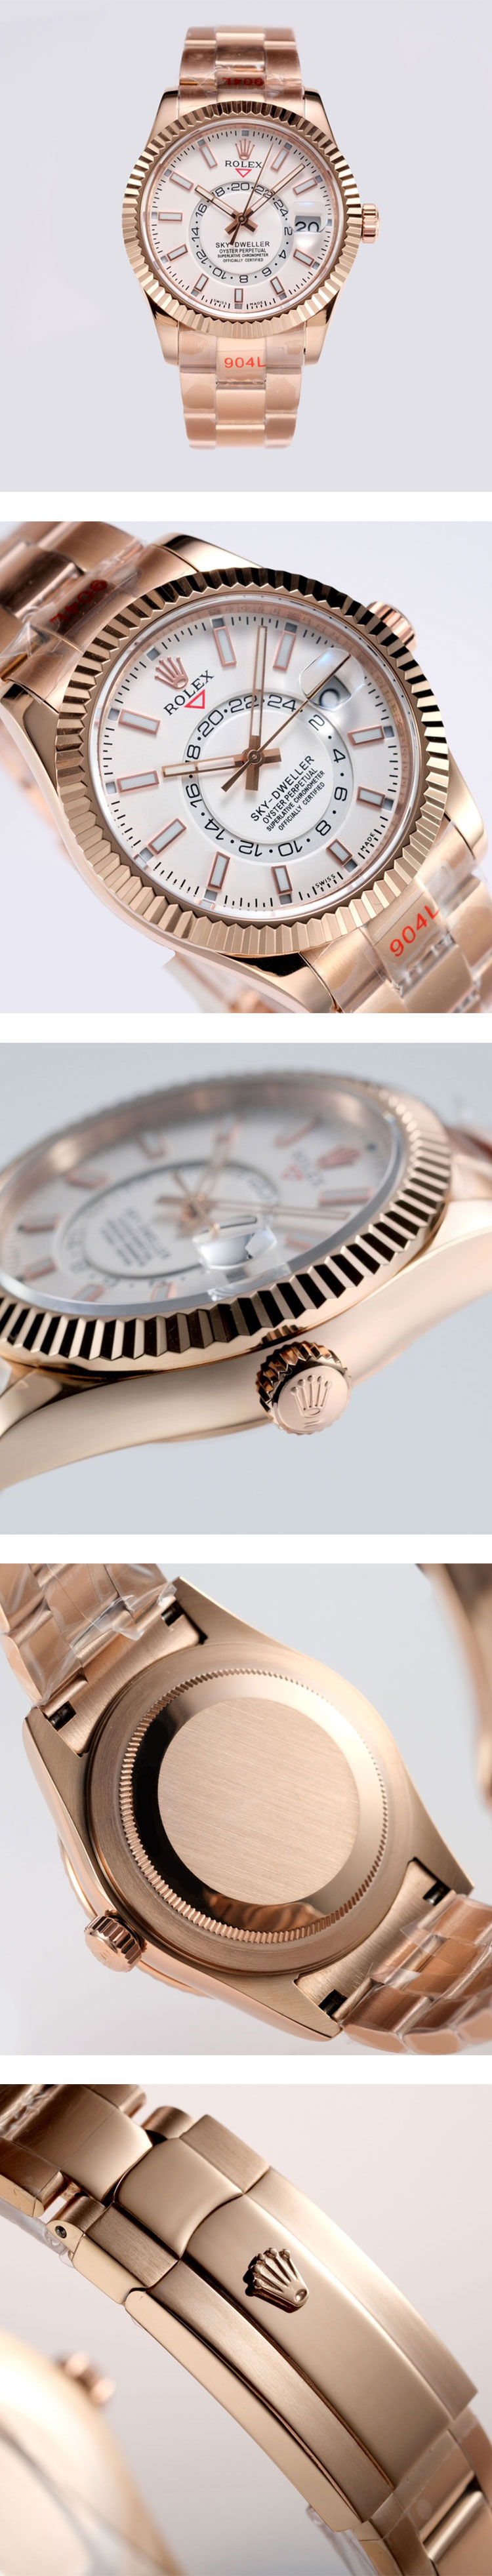 スーパーコピー時計ロレックスM326935-0005販売 スカイドゥエラー 42mm  ホワイト ピンクゴールド